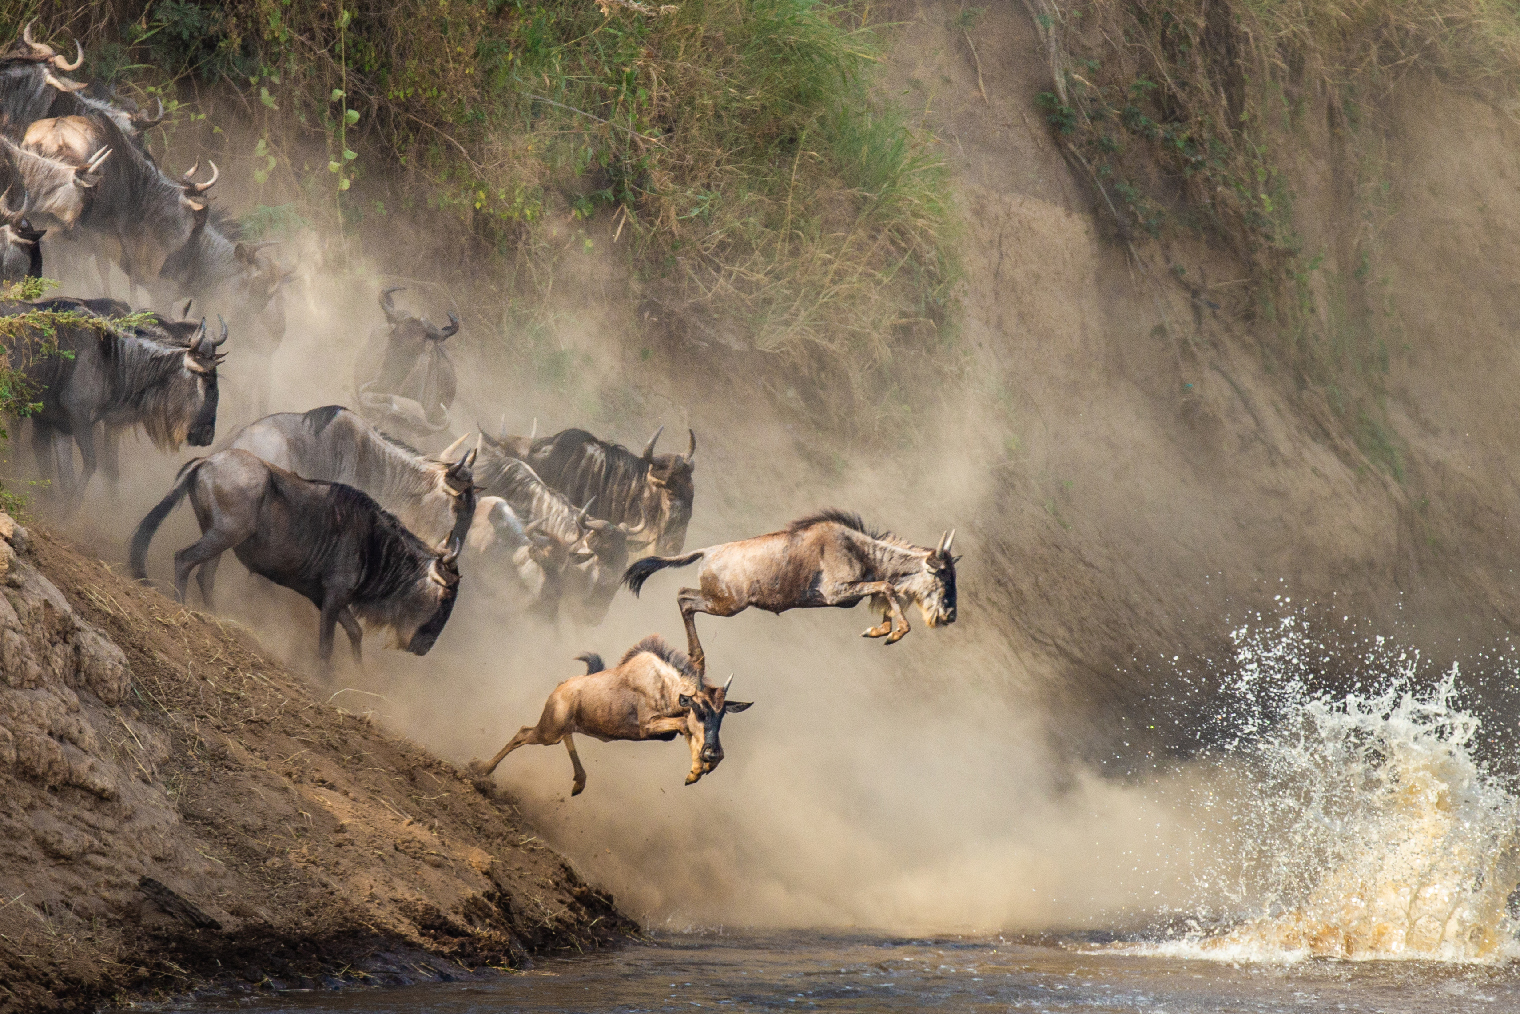 Антилопы гну пересекают реку Мару. Фото: GUDKOV ANDREY / Shutterstock